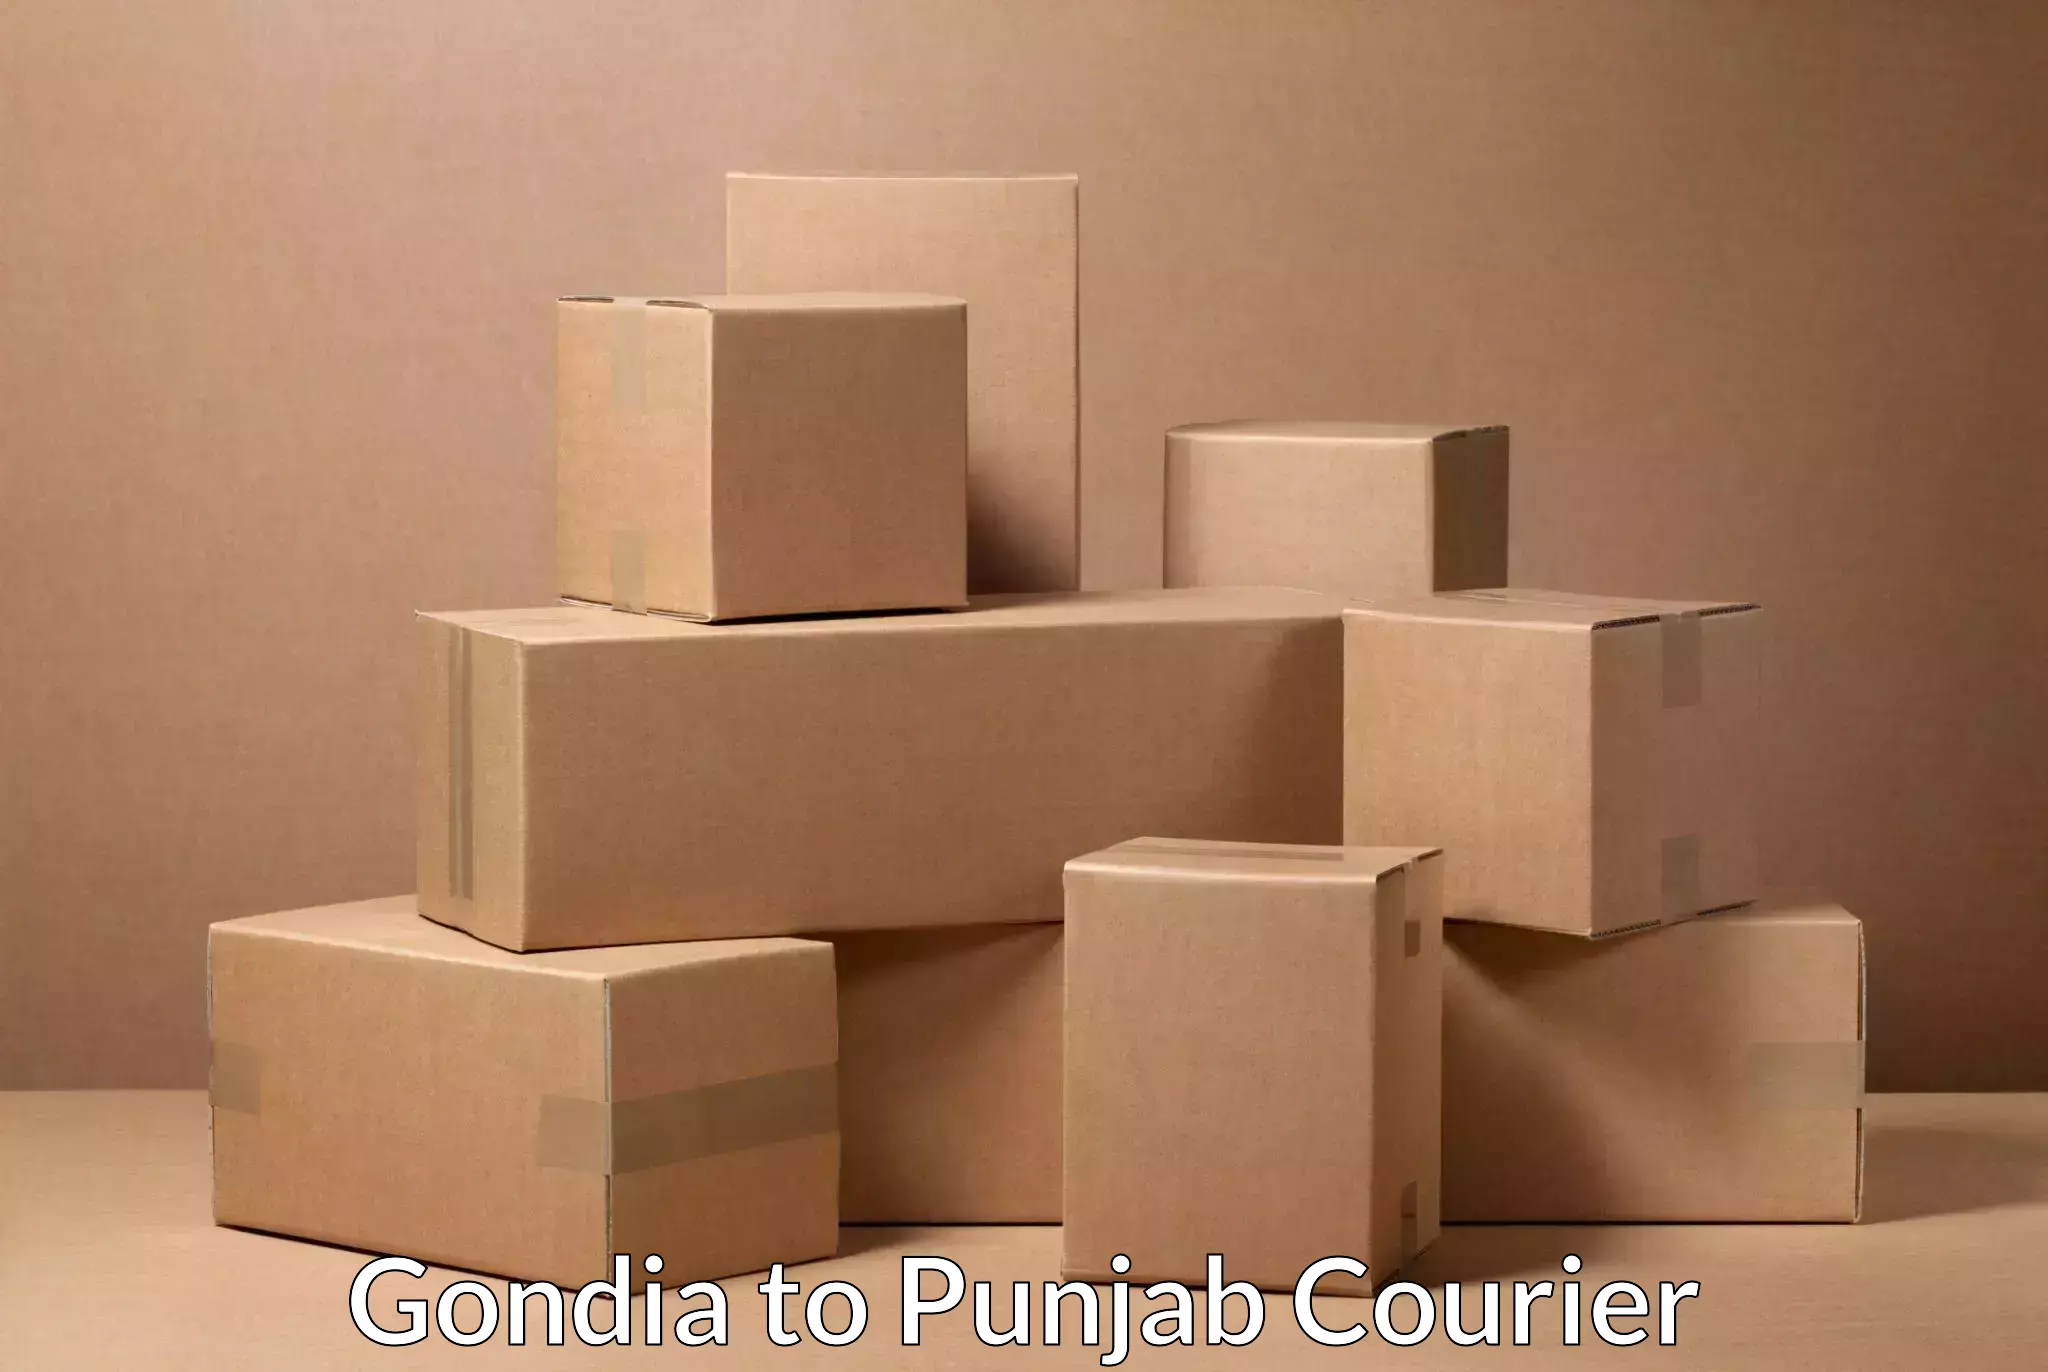 Next-generation courier services Gondia to Tarsikka